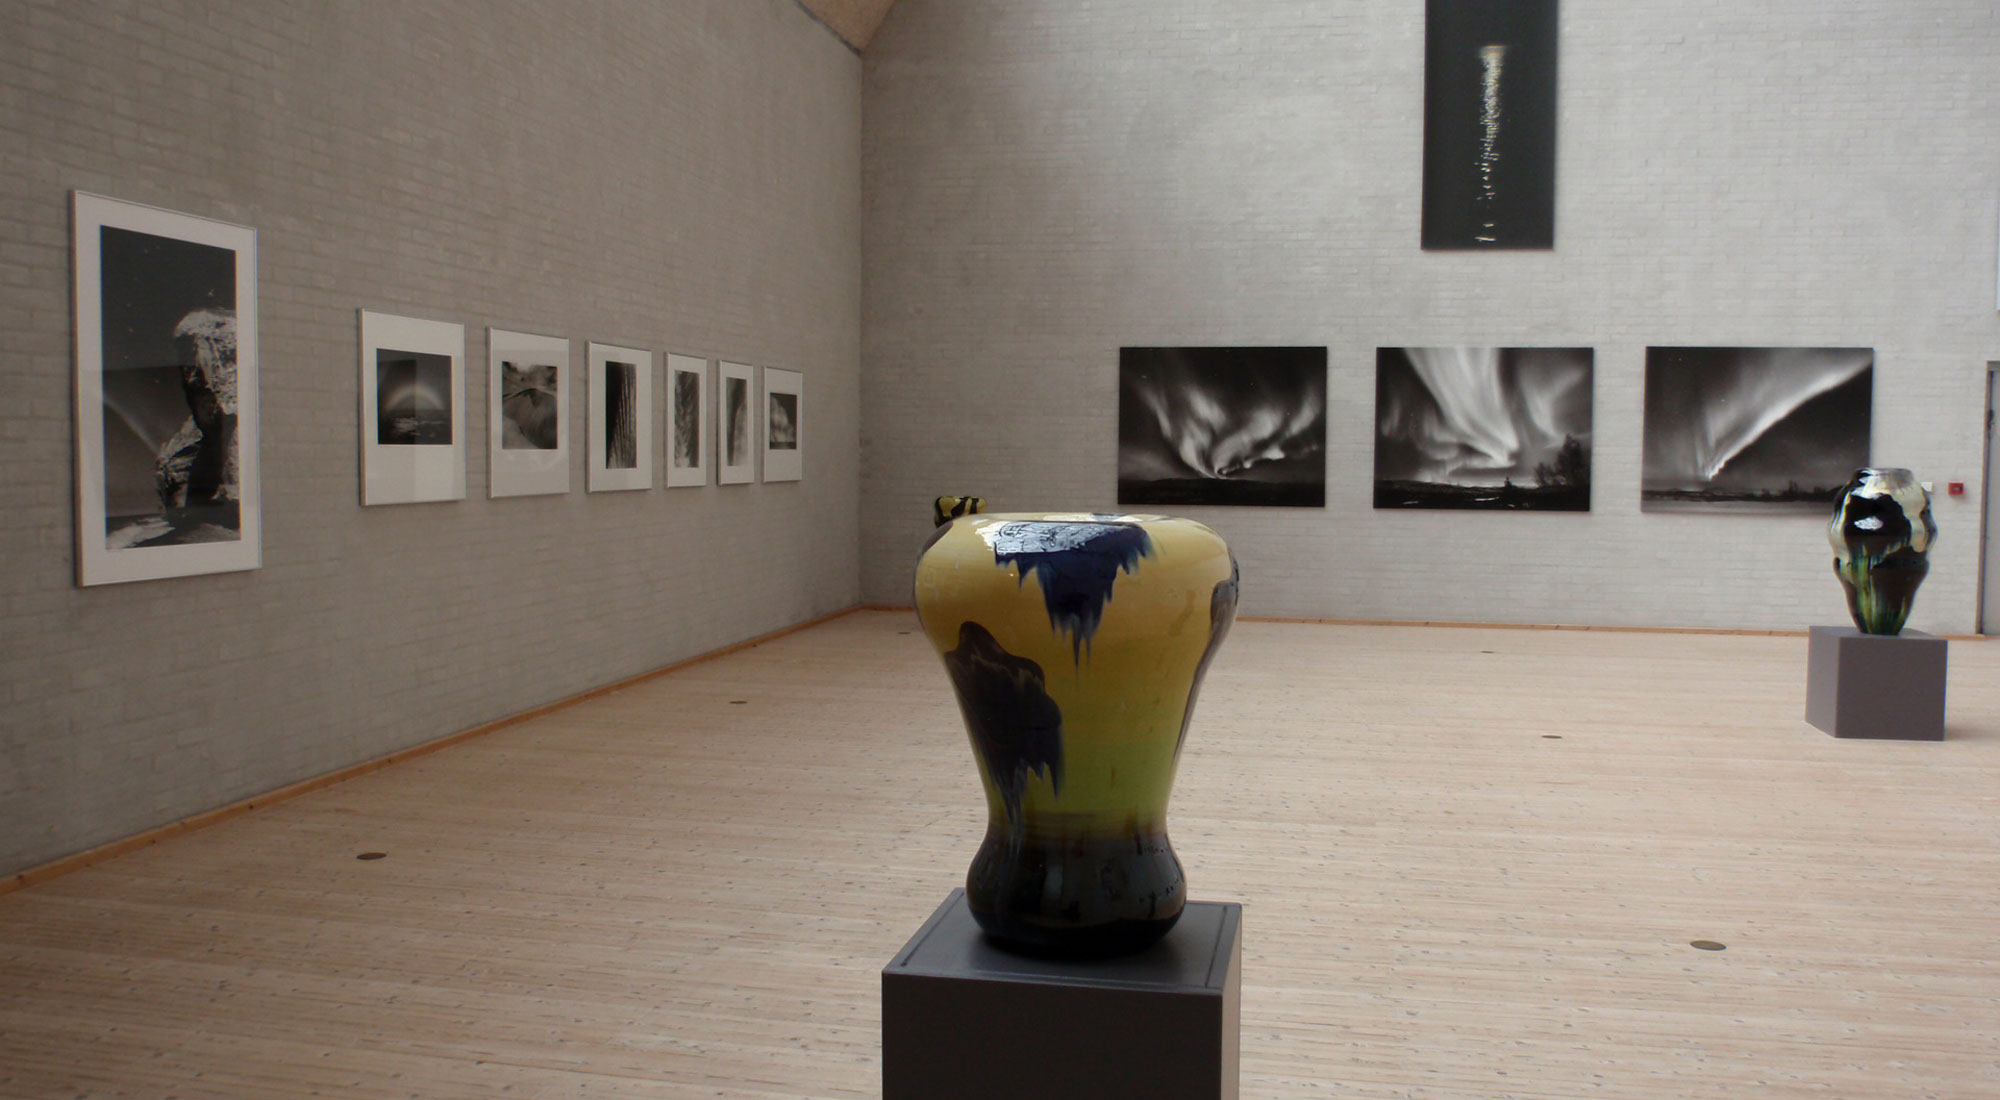 Keramikkrukker og fotos fra udstillingen "Det nordiske lys i foto og glasur" med Kirsten Klein og Gunhild Rudjord på Himmerlands Kunstmuseum